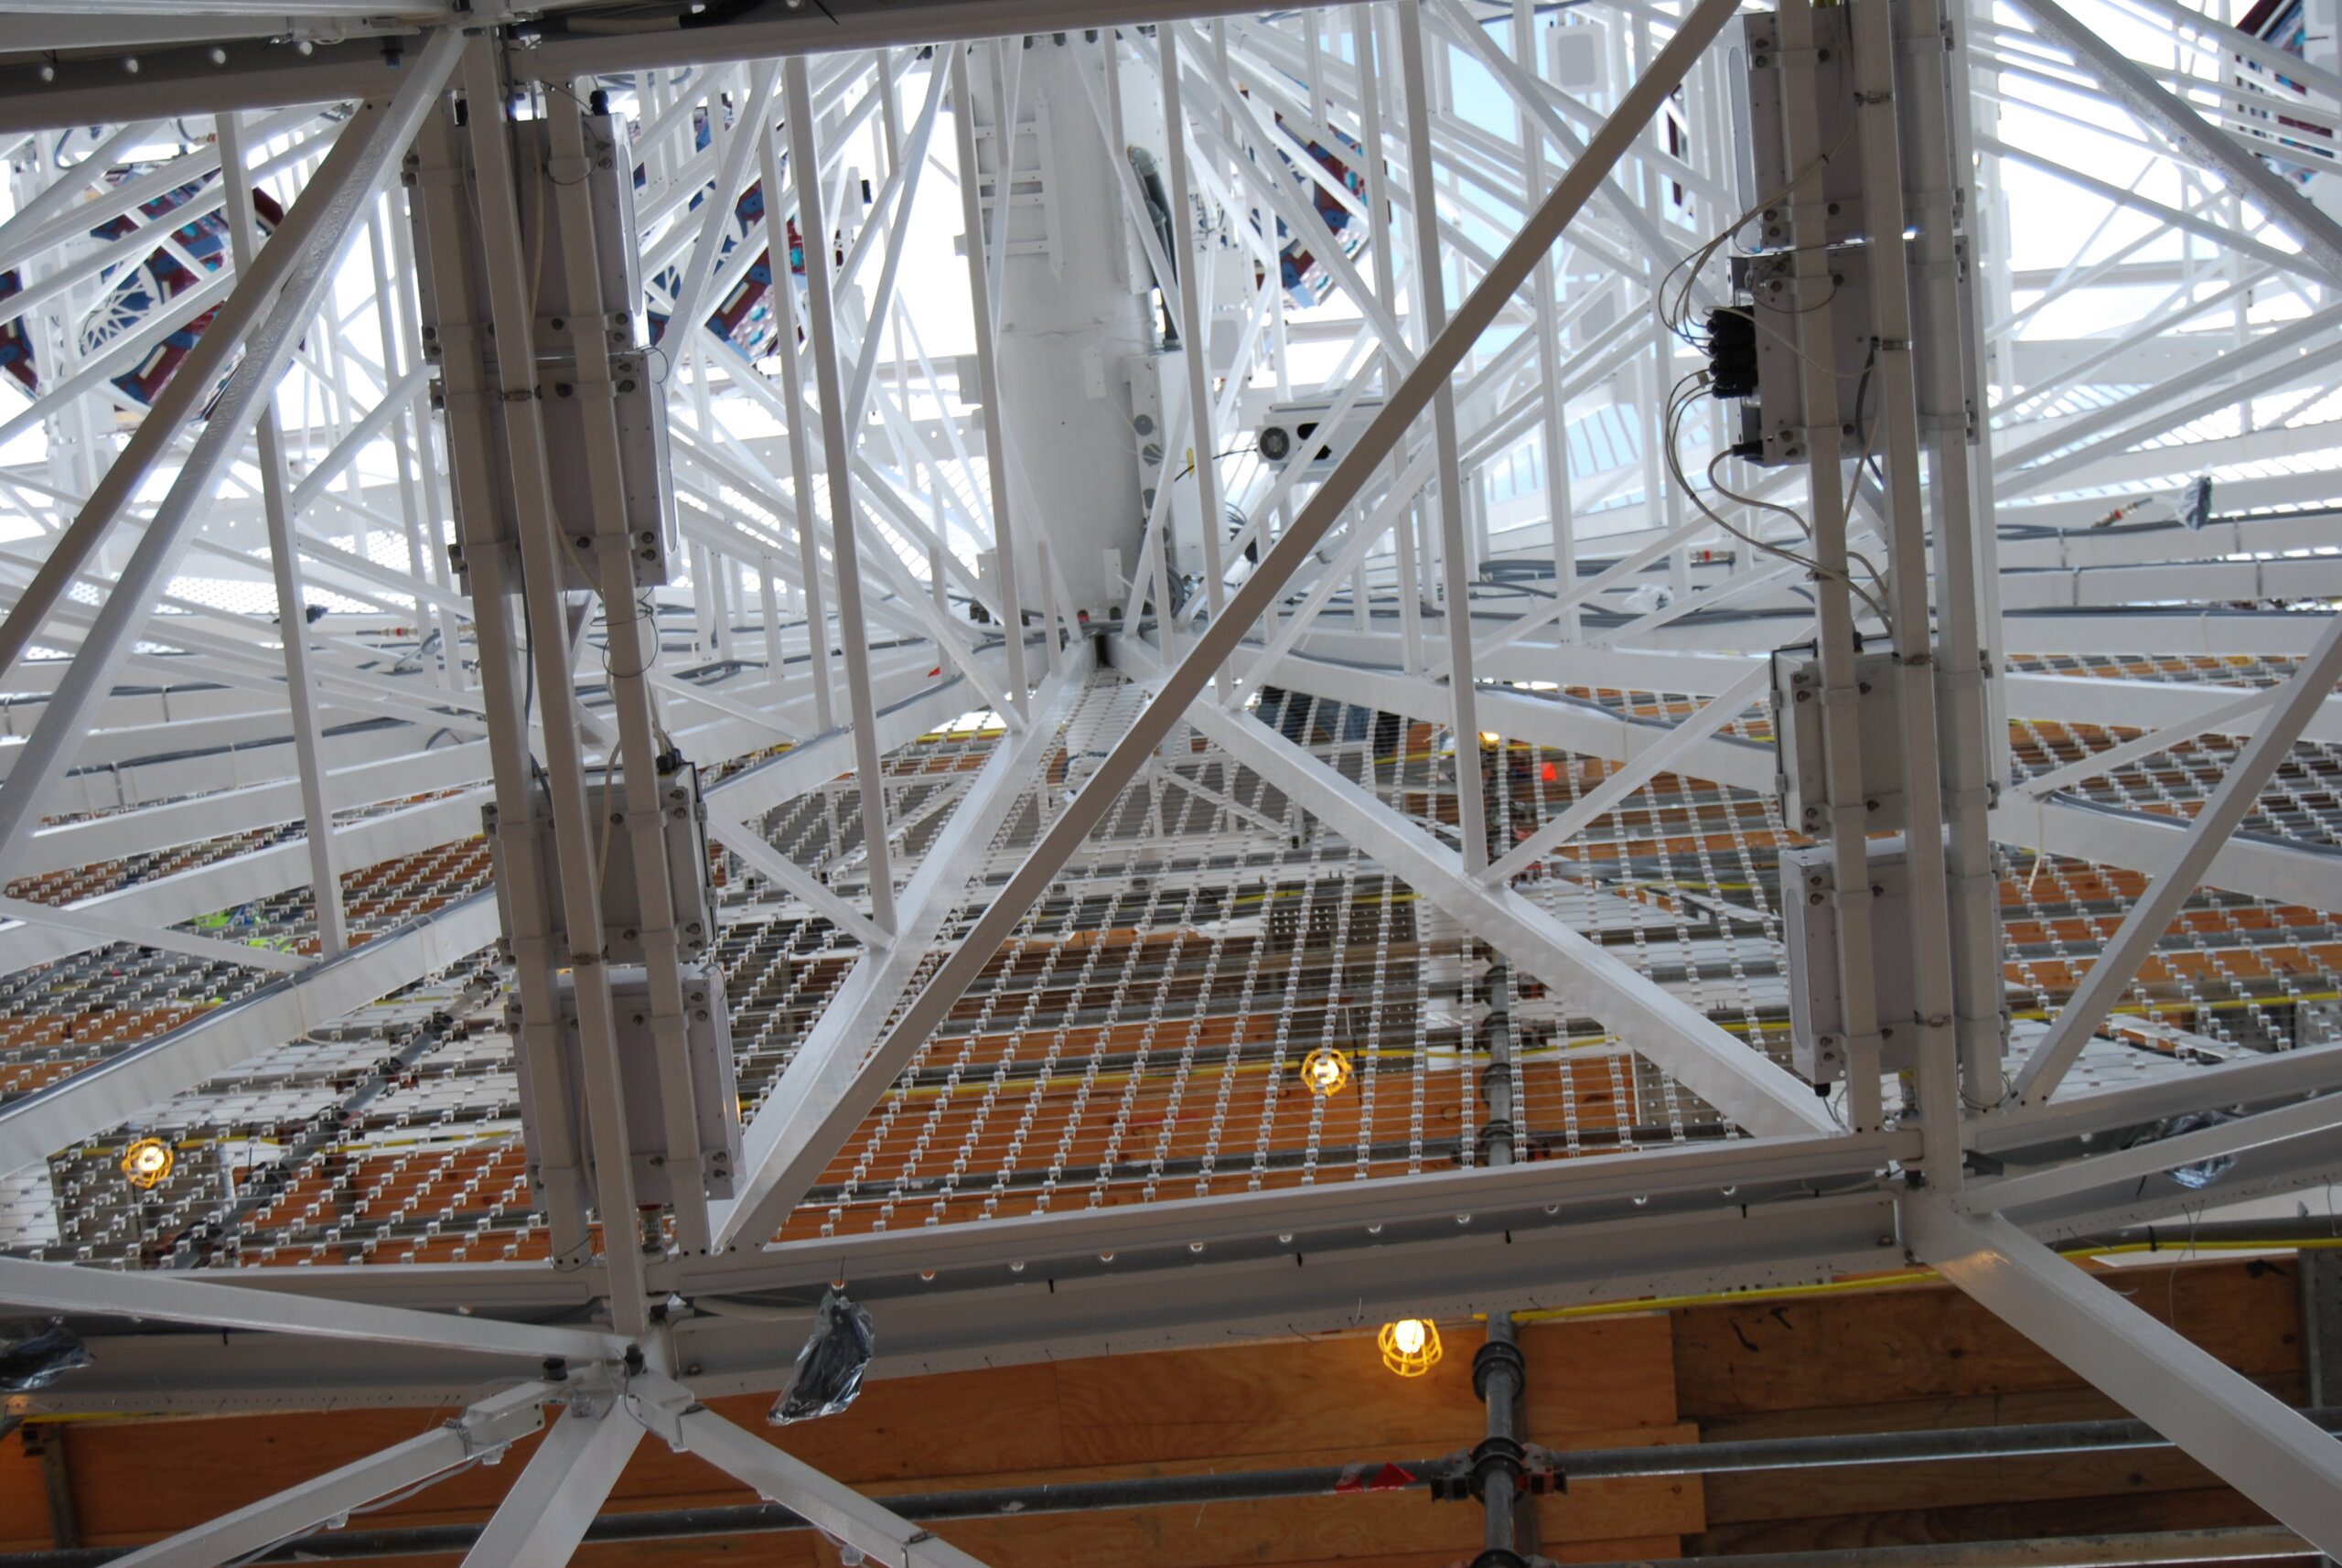 Irvine Spectrum Center Ferris Wheel Ground View